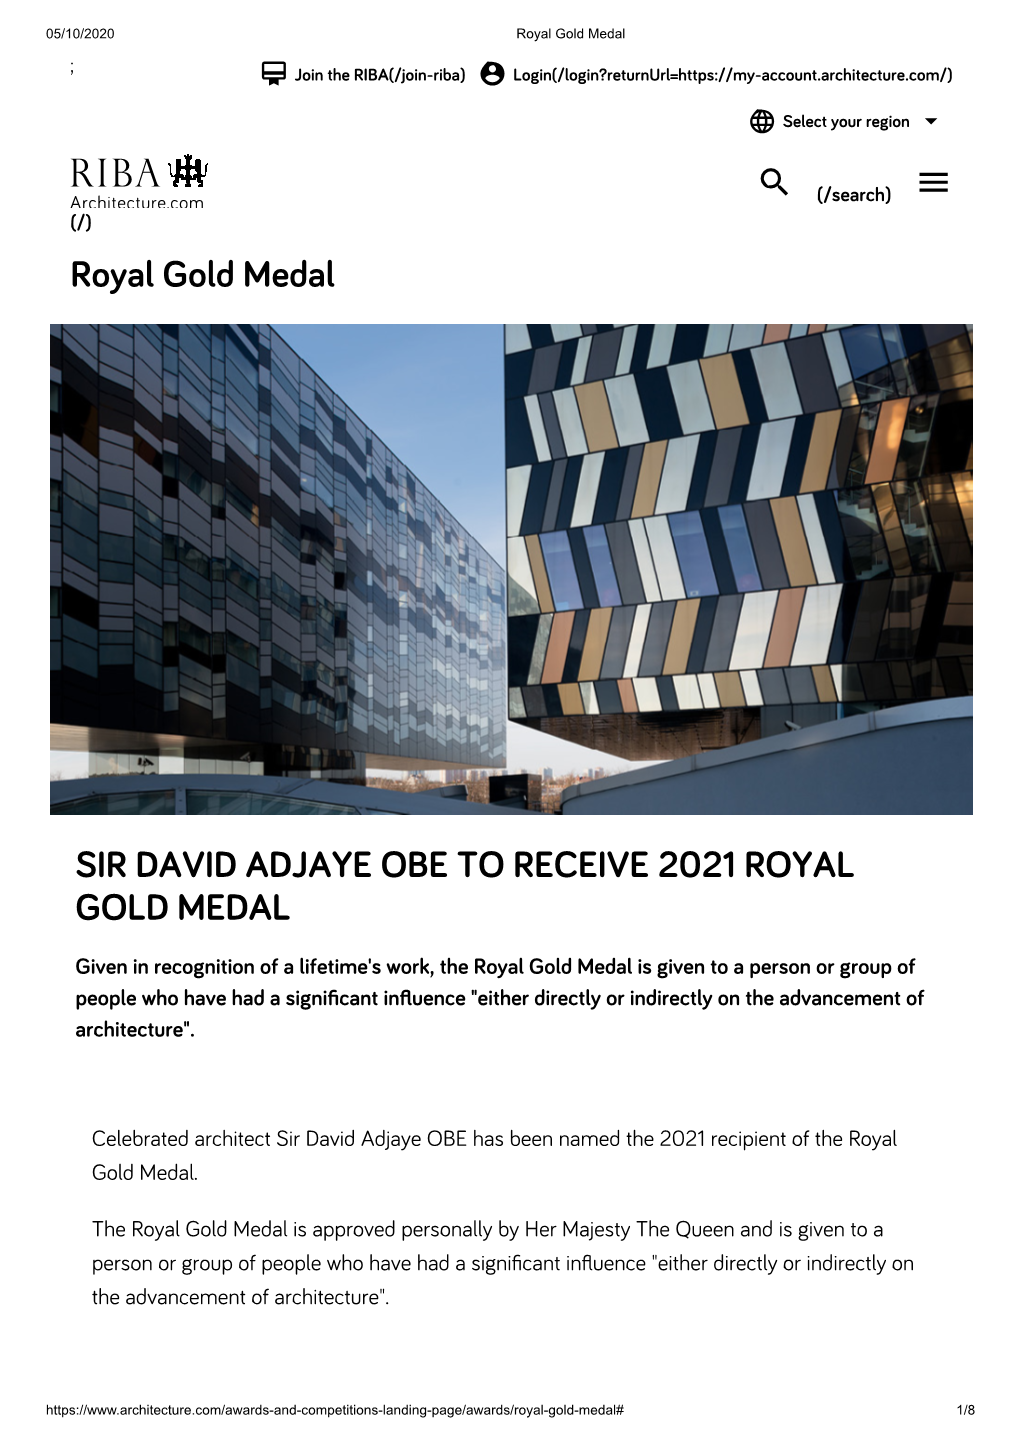 Royal Gold Medal SIR DAVID ADJAYE OBE to RECEIVE 2021